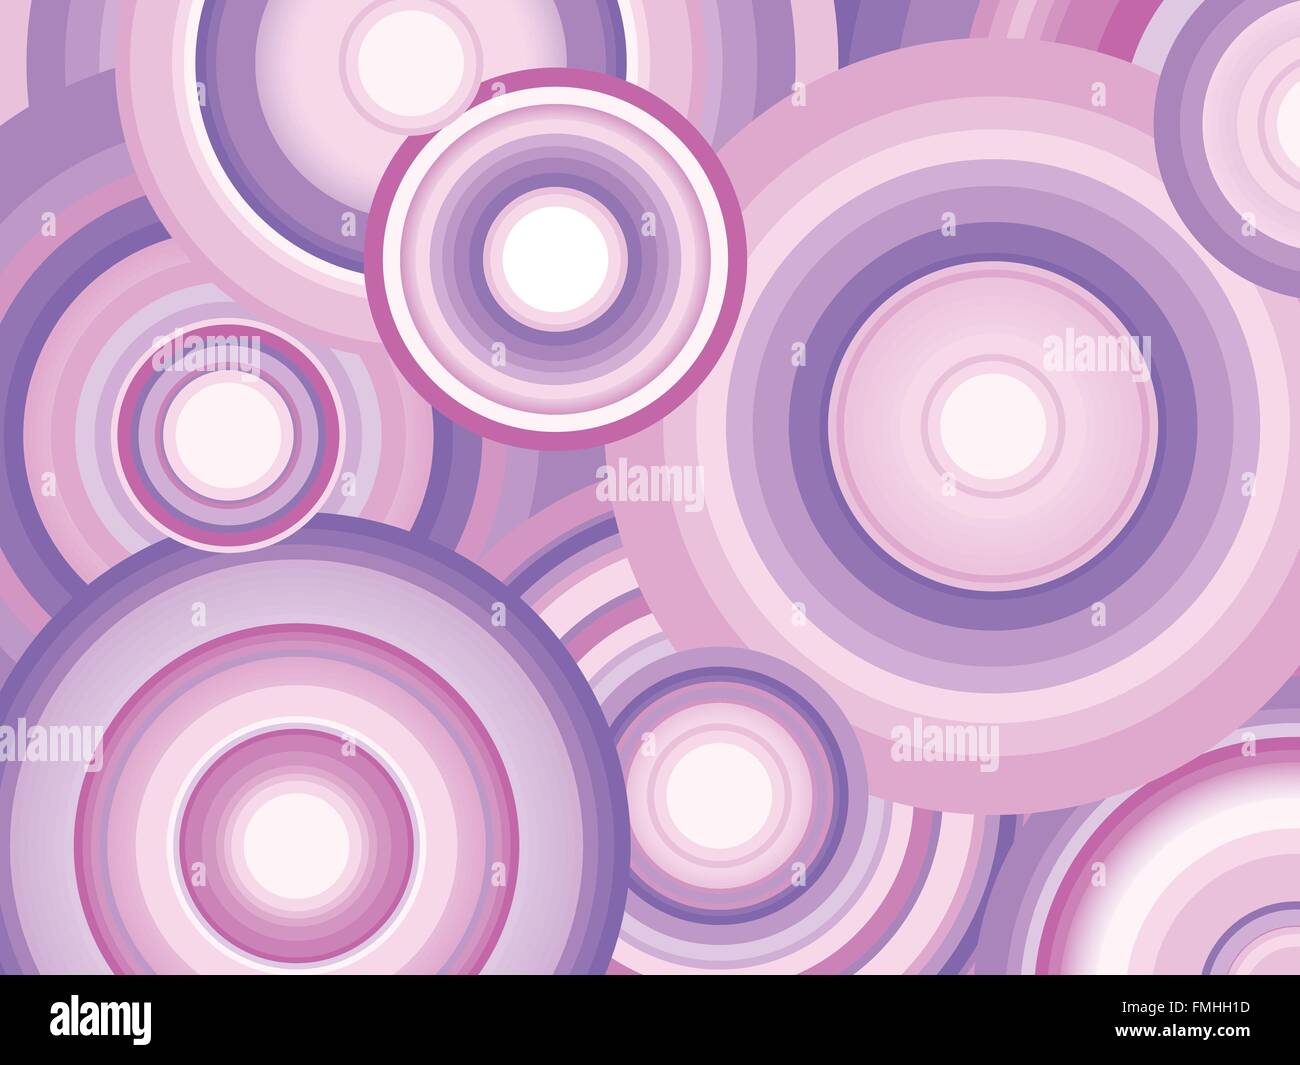 Zusammenfassung Hintergrund mit lila schattierten konzentrische Kreise Stock Vektor